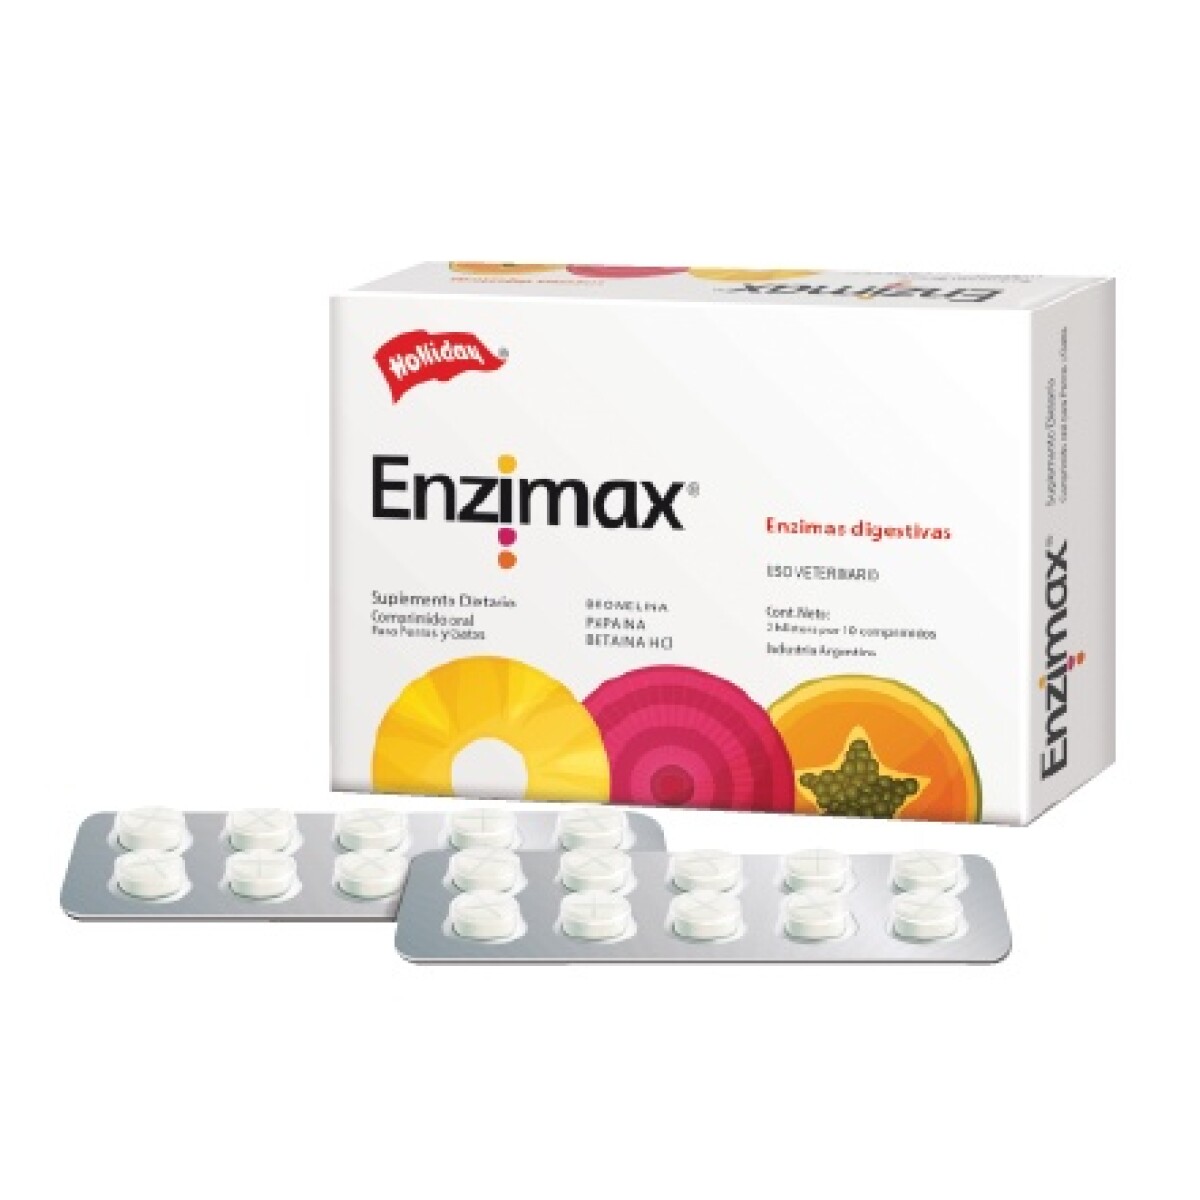 ENZIMAX 20 COMPRIMIDOS - Enzimax 20 Comprimidos 